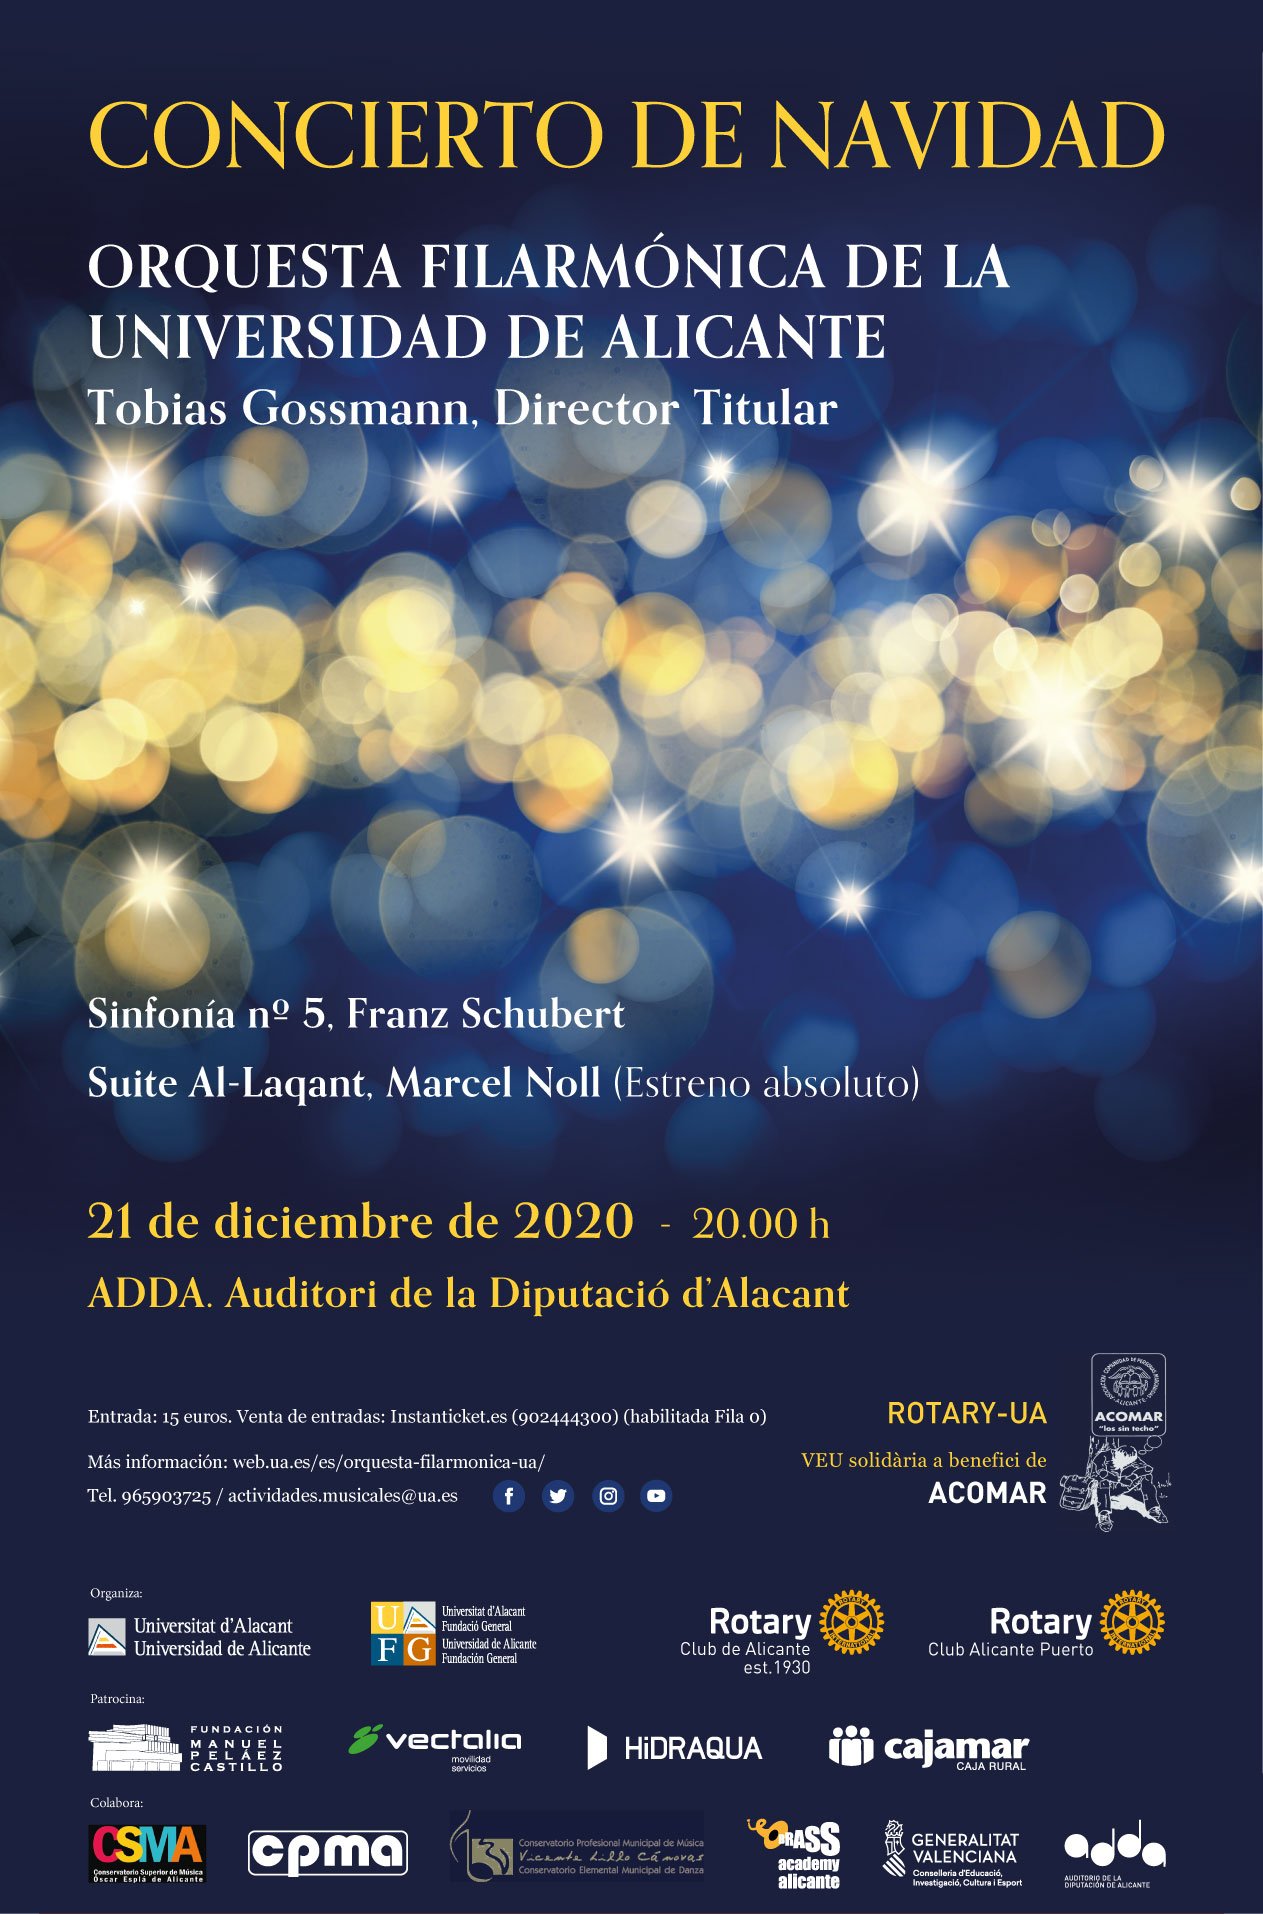 Concierto de Navidad Rotary UA Alicante 2020